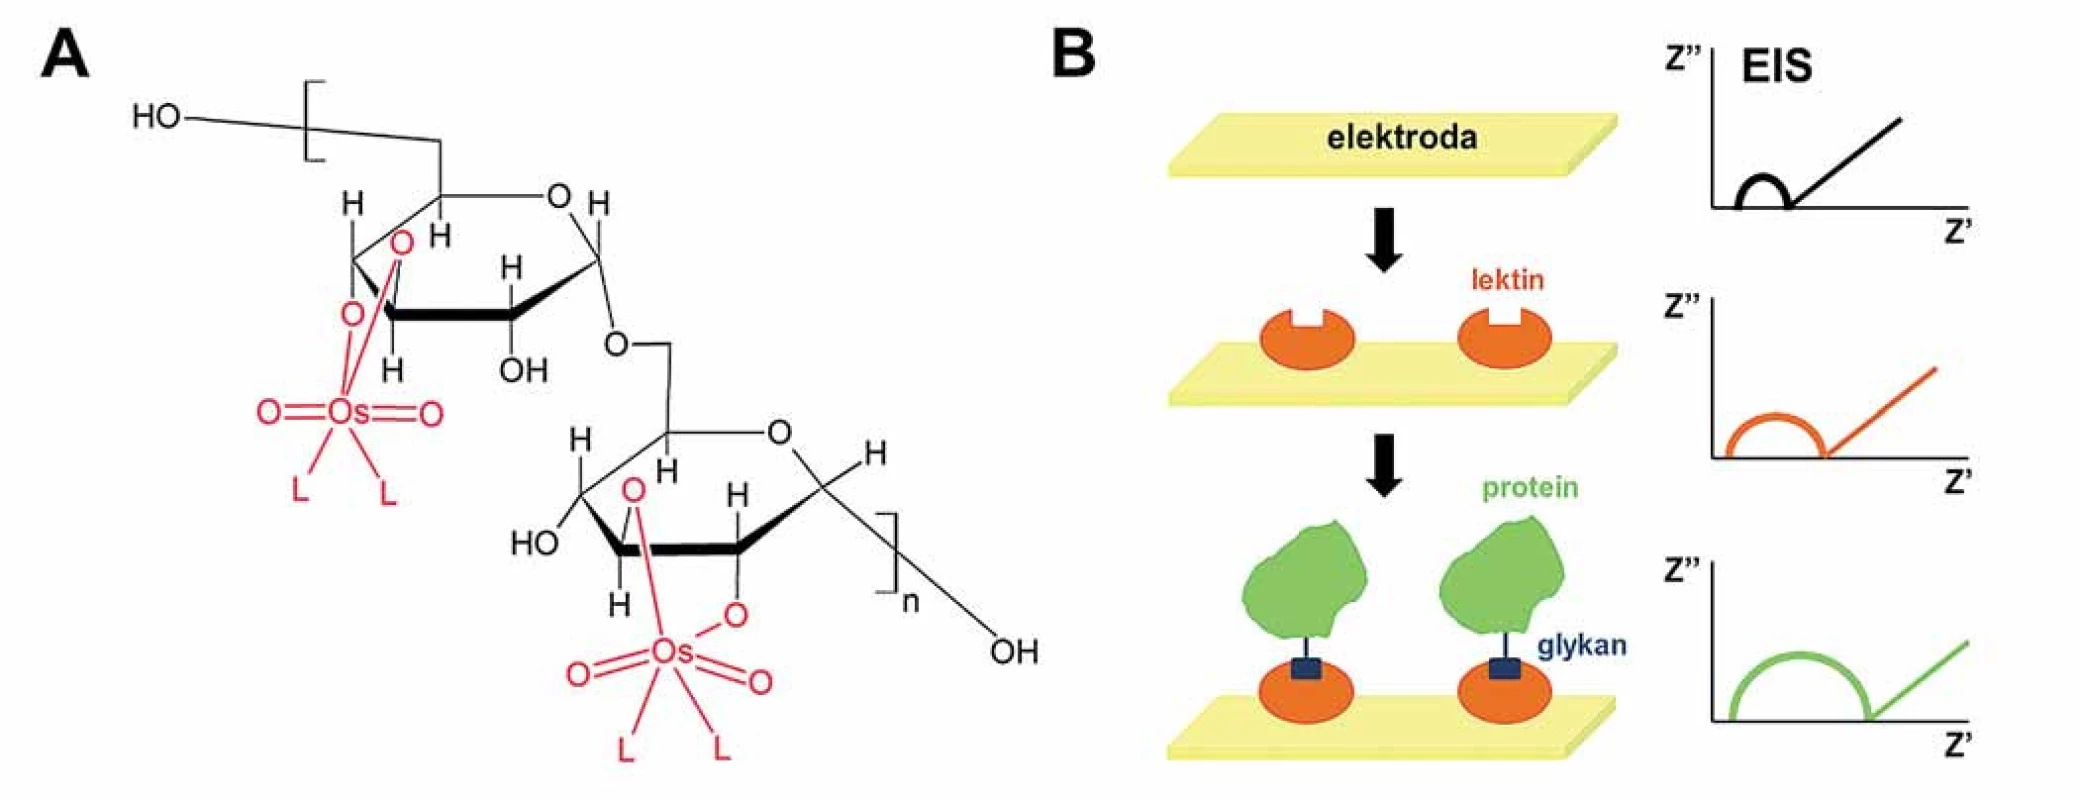 Elektrochemická analýza cukerné složky pro detekci glykoproteinů.
A. Modifikace oligosacharidů a polysacharidů pomocí komplexů šestimocného osmia a dusíkatého ligandu, Os(VI)L. B. Konstrukce lektinového biosenzoru pro detekci glykoproteinů pomocí elektrochemické impedanční spektroskopie (EIS). Velikost půlkruhu je úměrná odporu přenosu elektronů (a naopak nepřímo úměrná propustnosti vrstvy), a tudíž zvýšení odporu signalizuje přítomnost cílové bílkoviny.